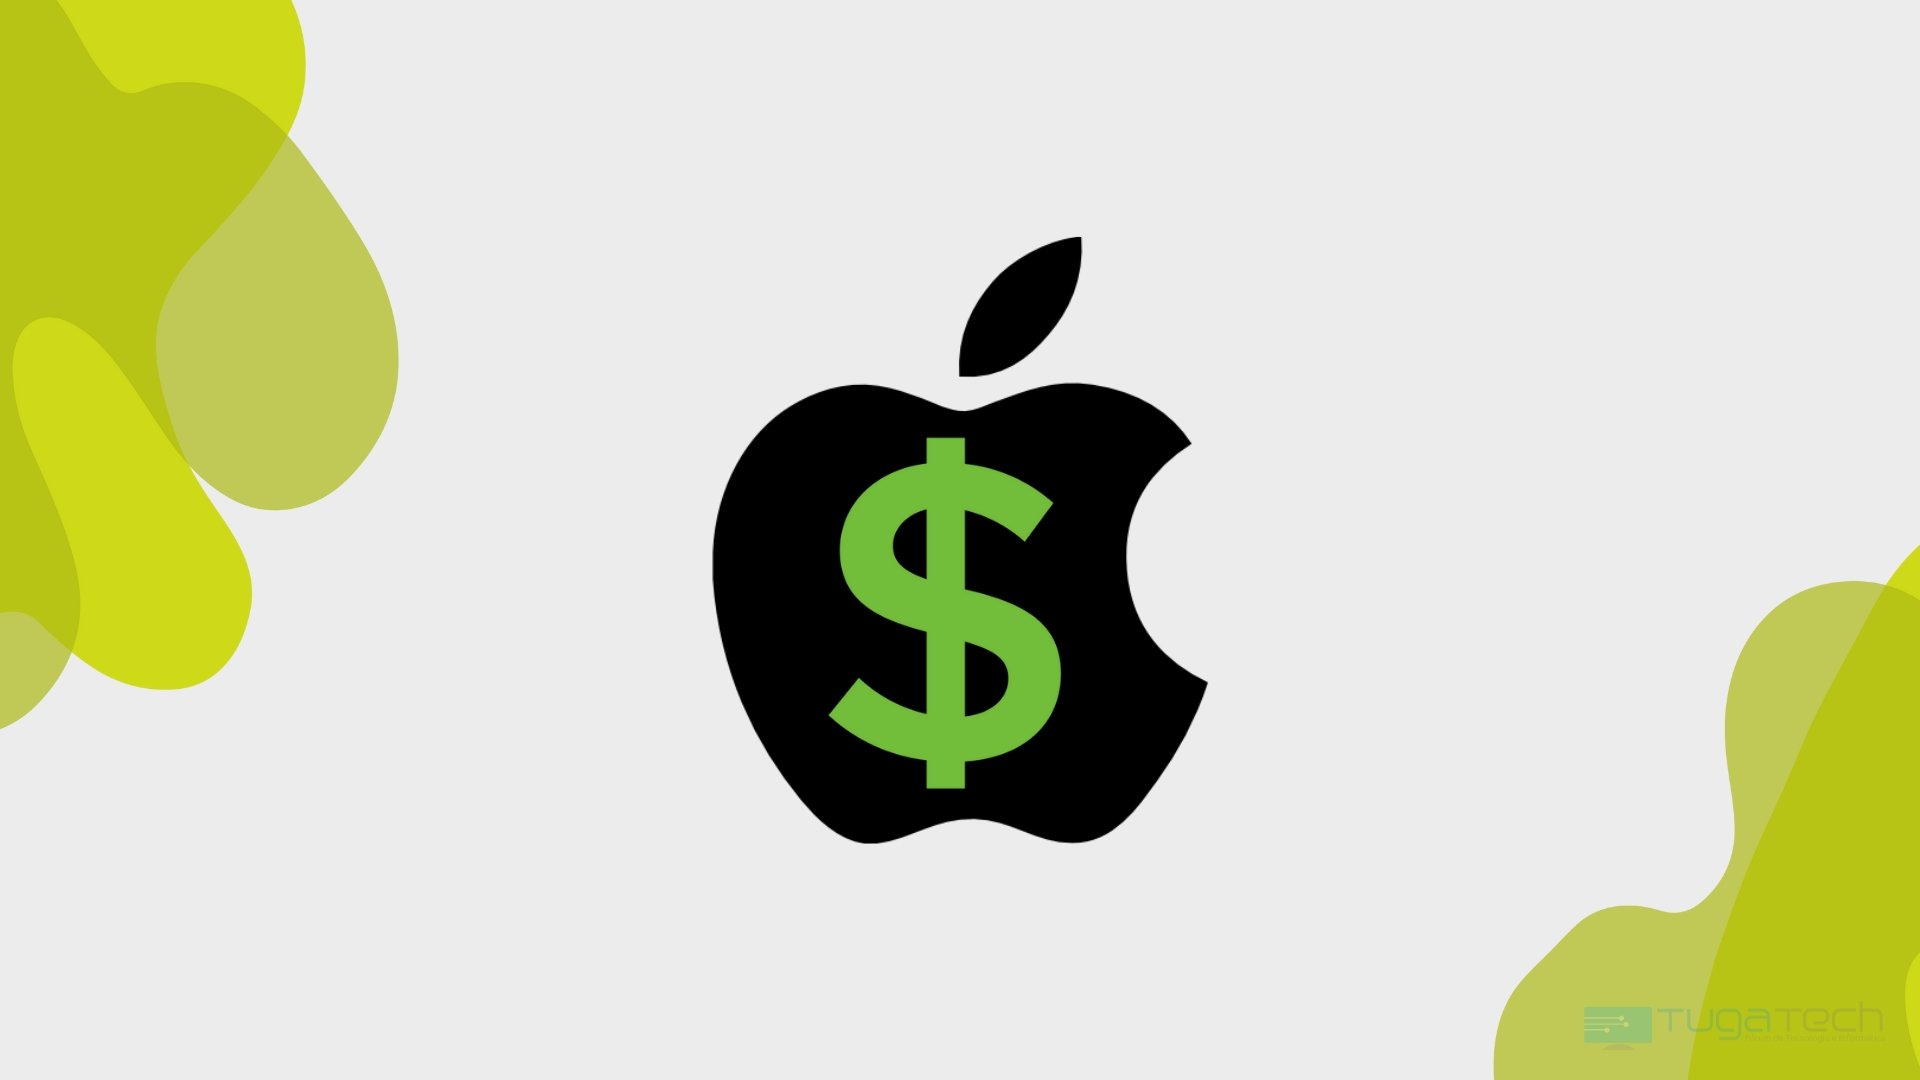 Apple com símbolo do dolar no interior